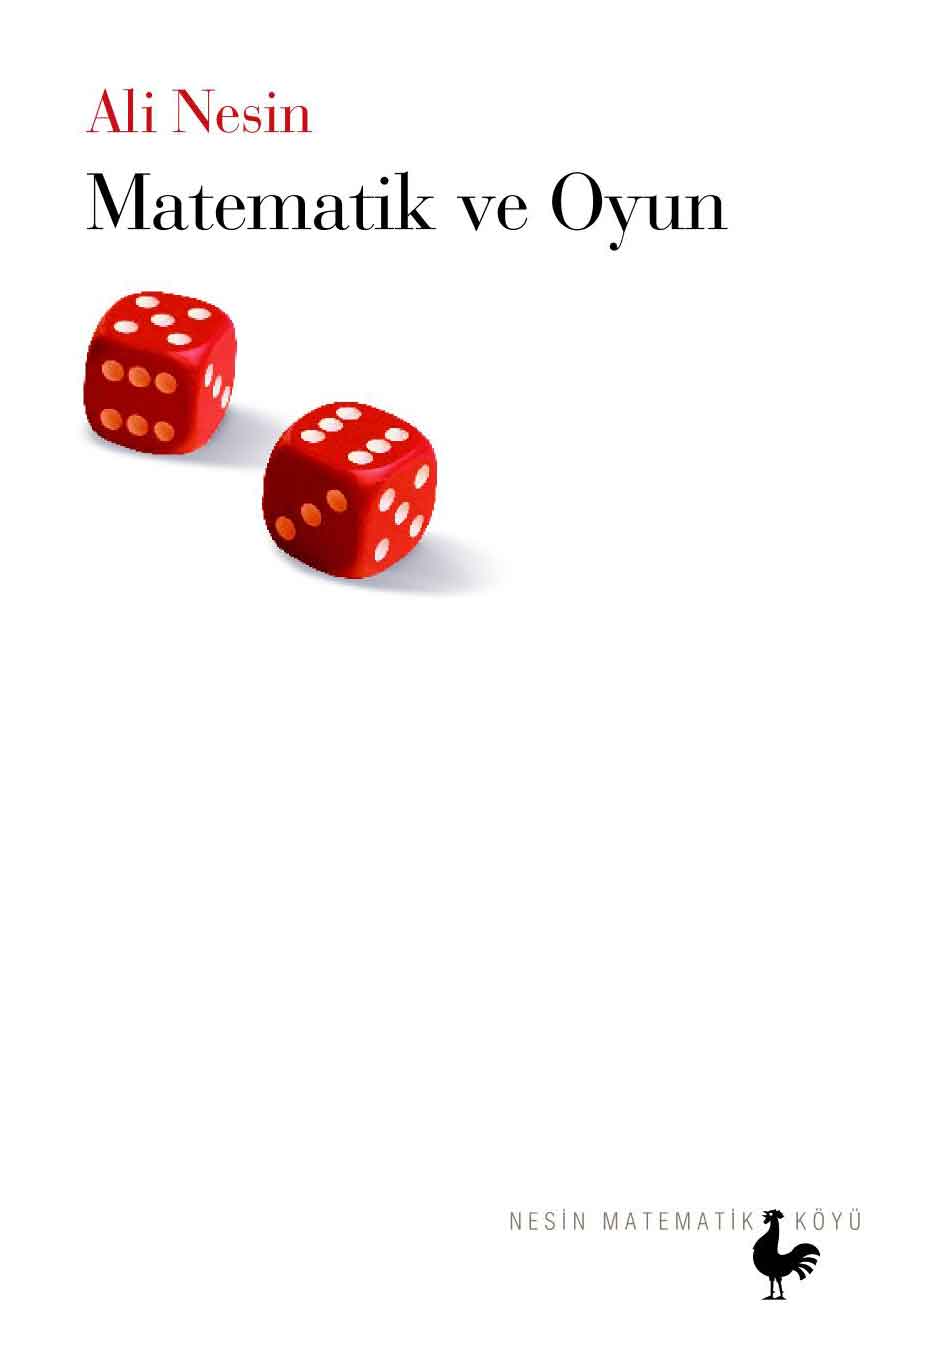 Ali Nesin "Matematik ve Oyun" - Nesin Yayınevi